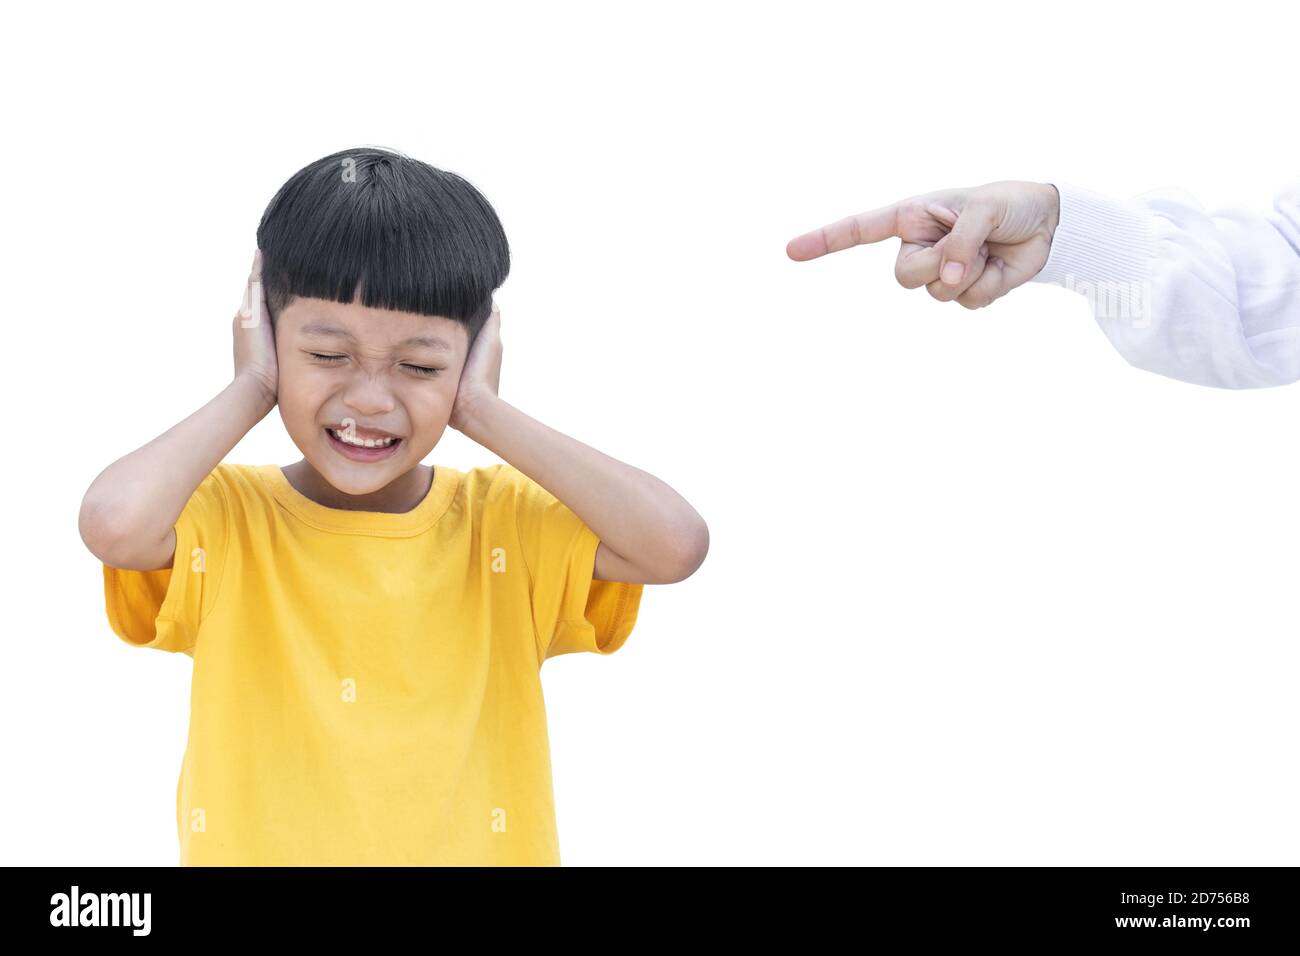 Un petit enfant asiatique couvrait son oreille isolée sur fond blanc. Mère pointait les doigts de son fils. Concept de violence familiale. Banque D'Images